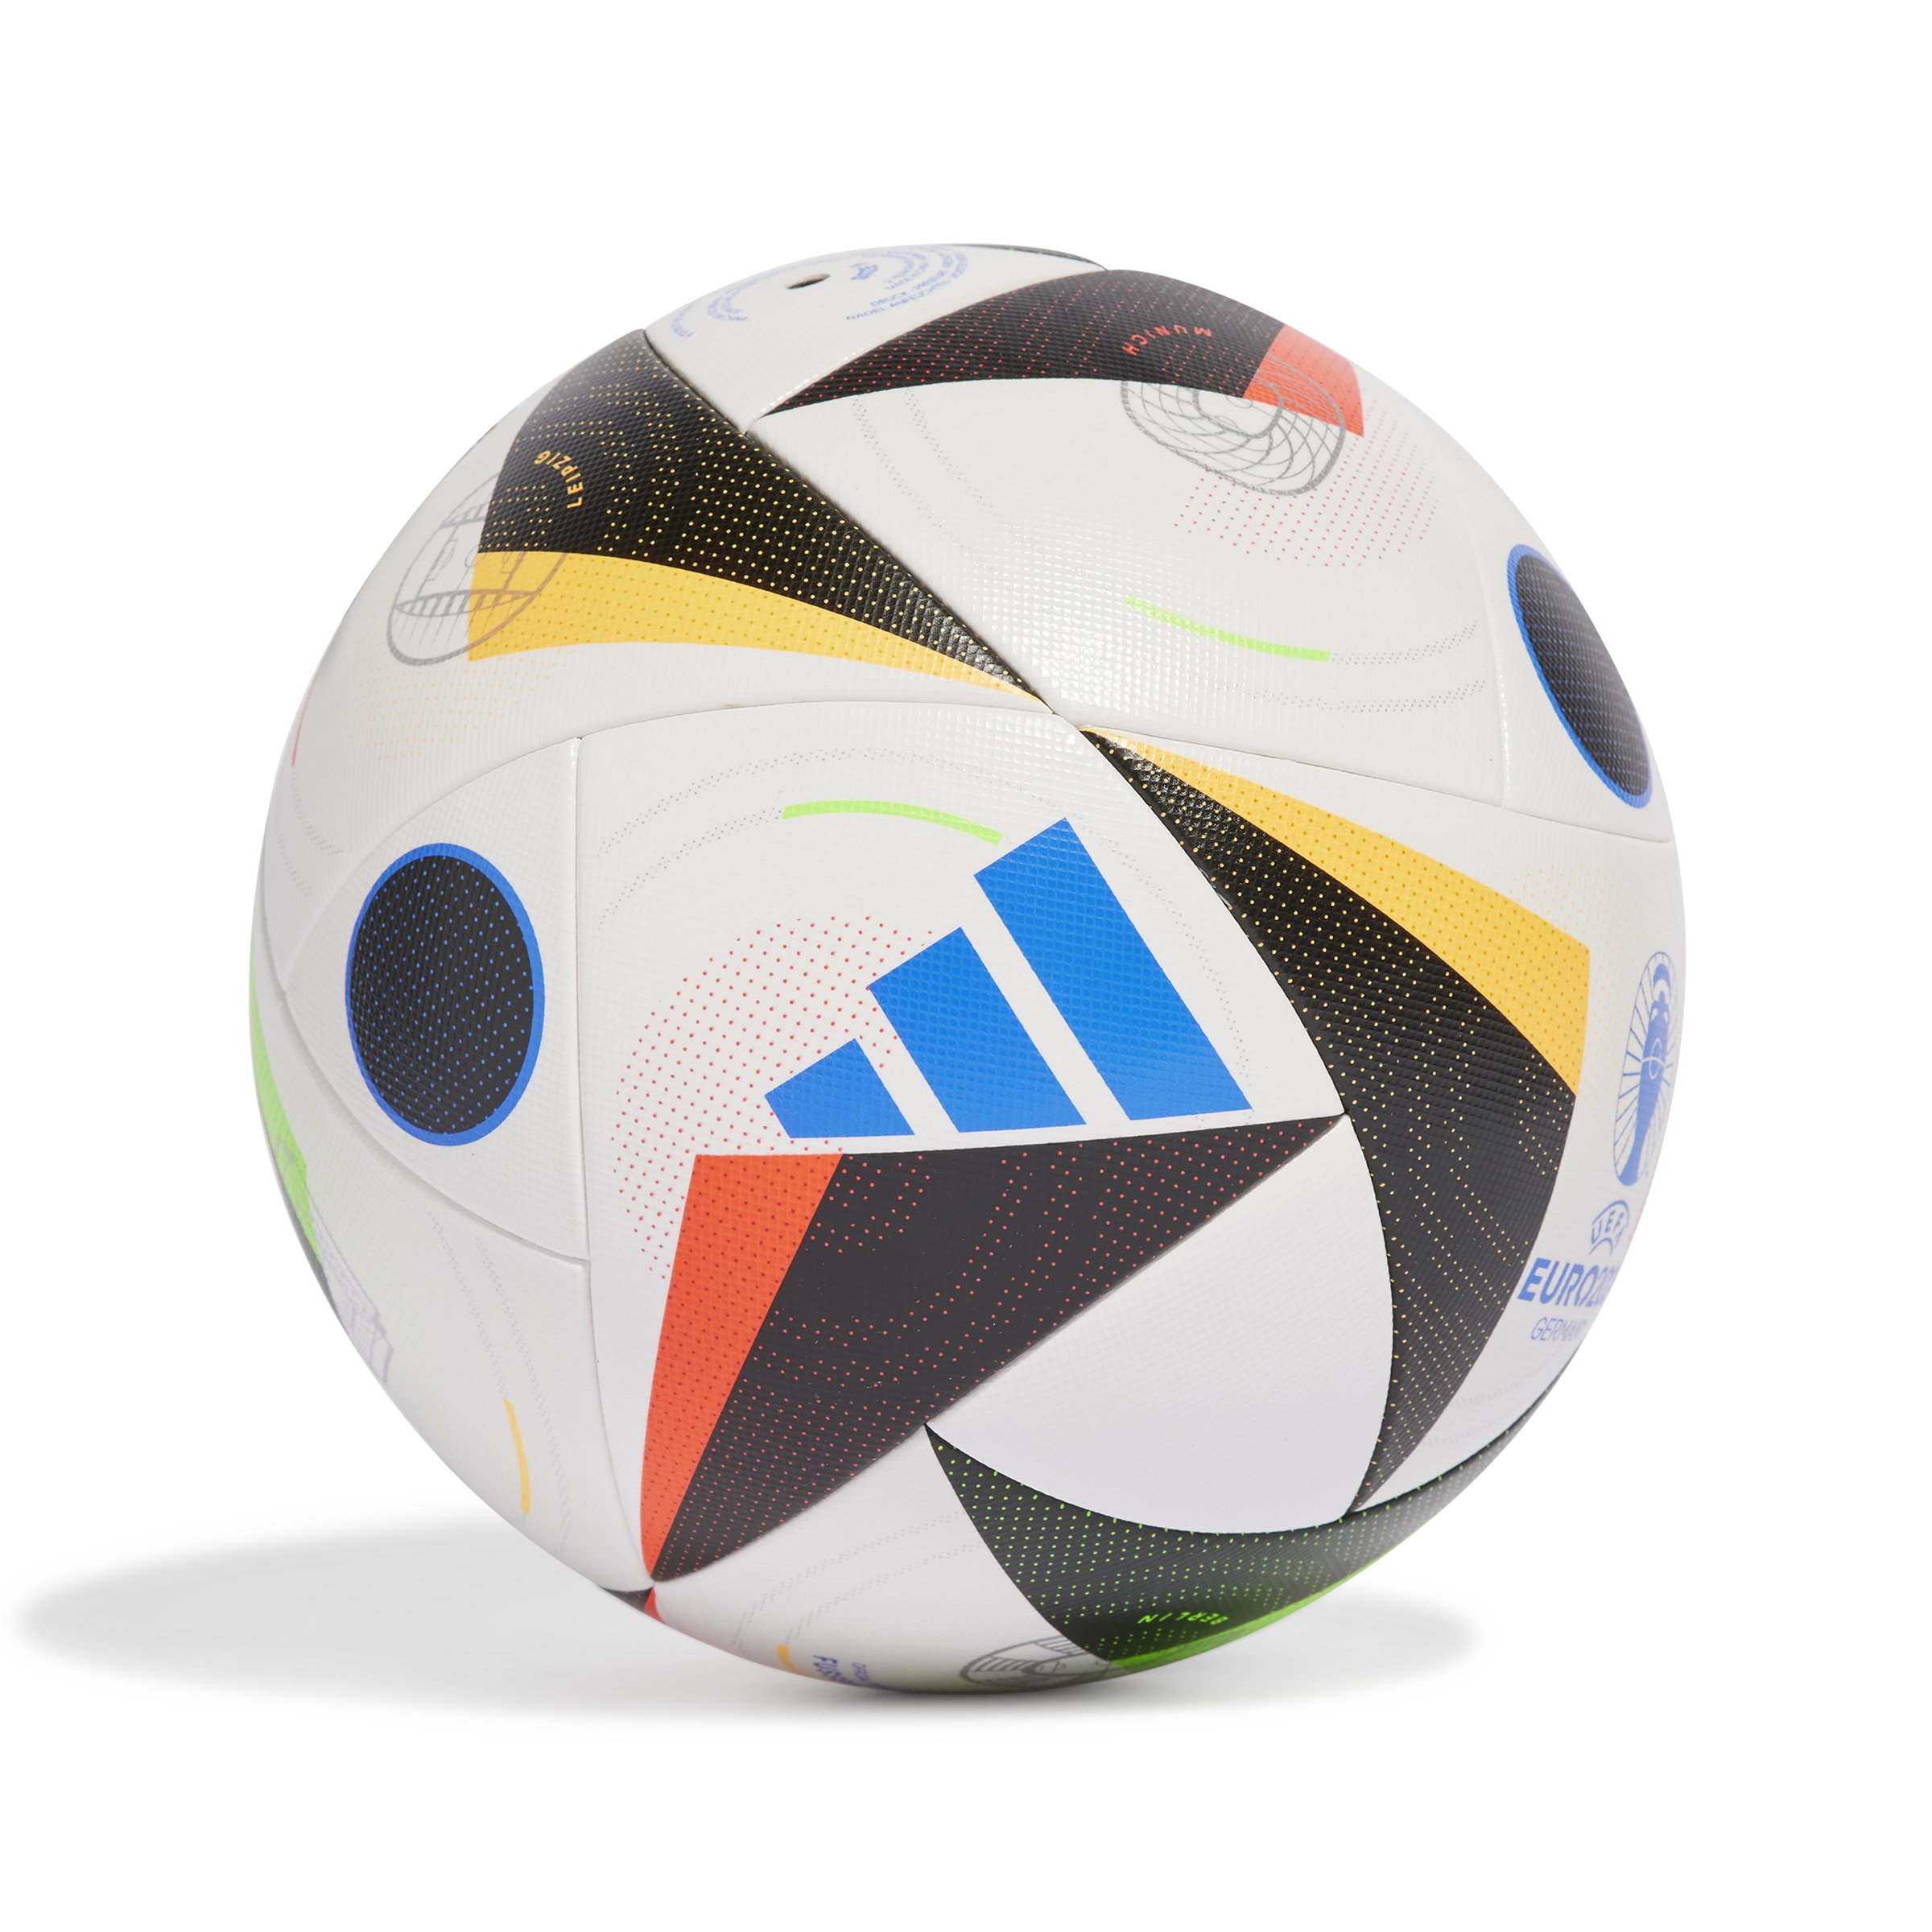 adidas Performance Fußball »EURO24 COM«, (1), Europameisterschaft 2024 EM Ball